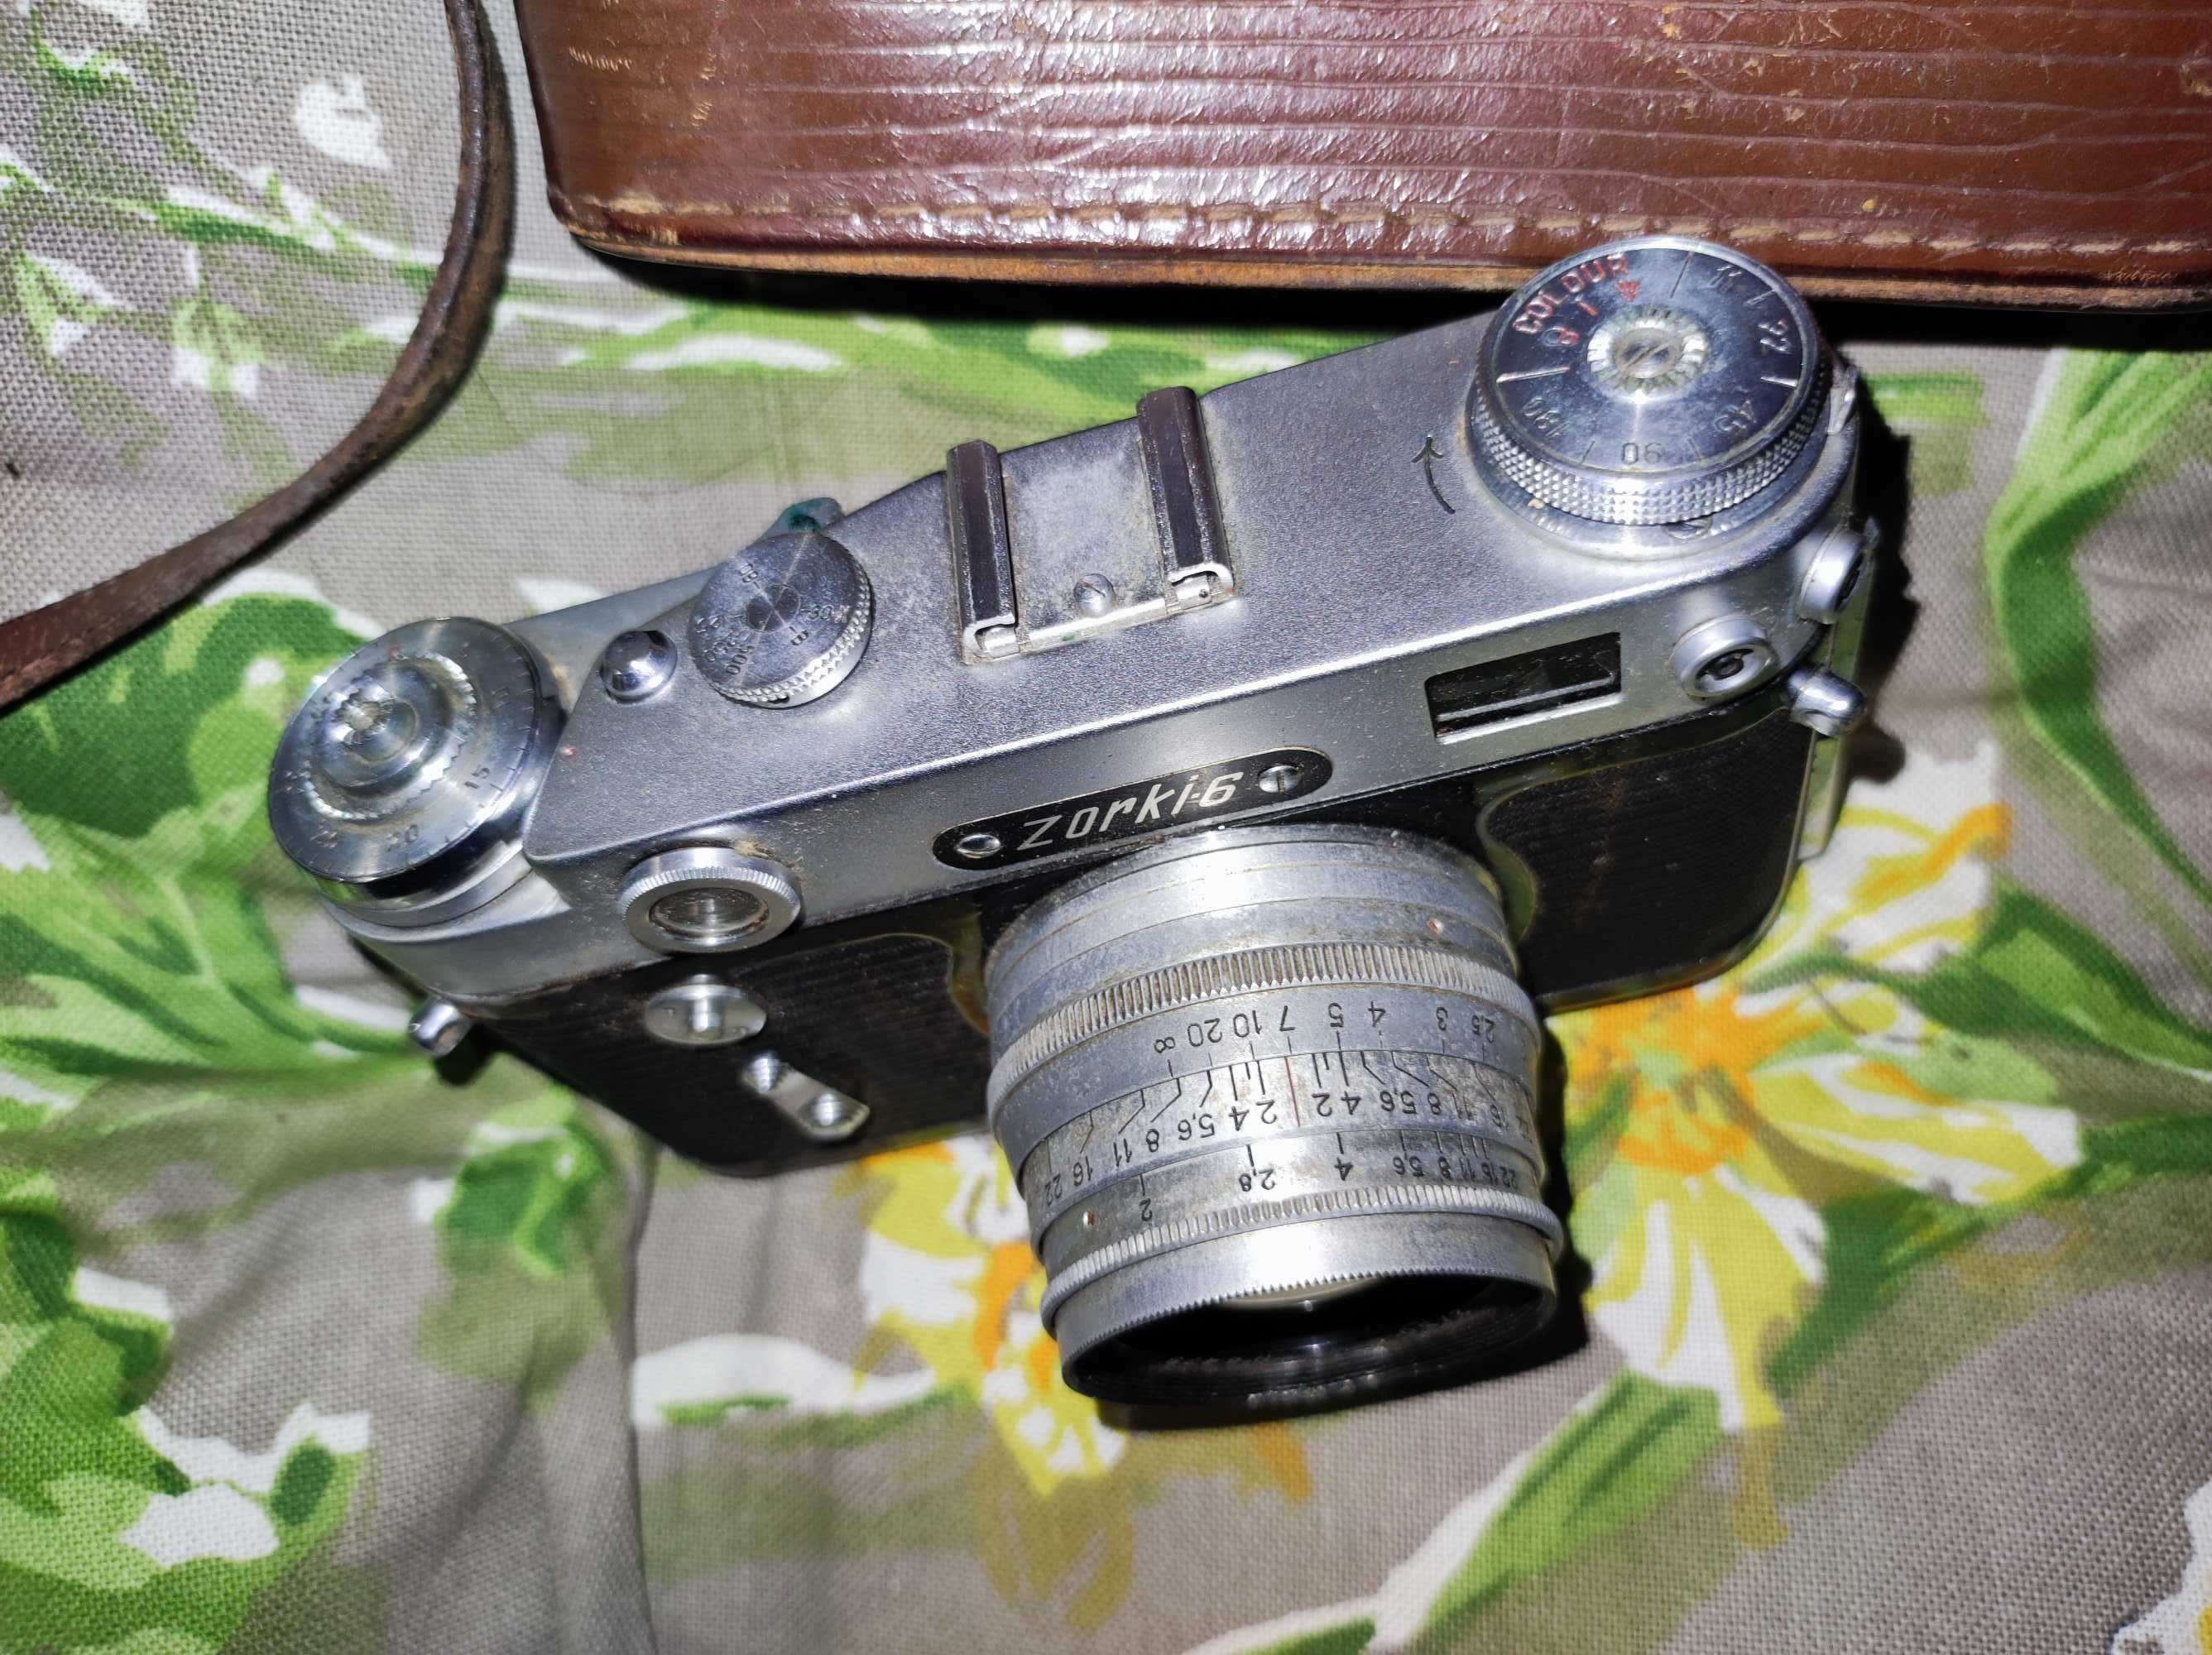 ФотоапаратZorki-6 (Зоркий - 6) вариант на экспорт/ варіант на експорт